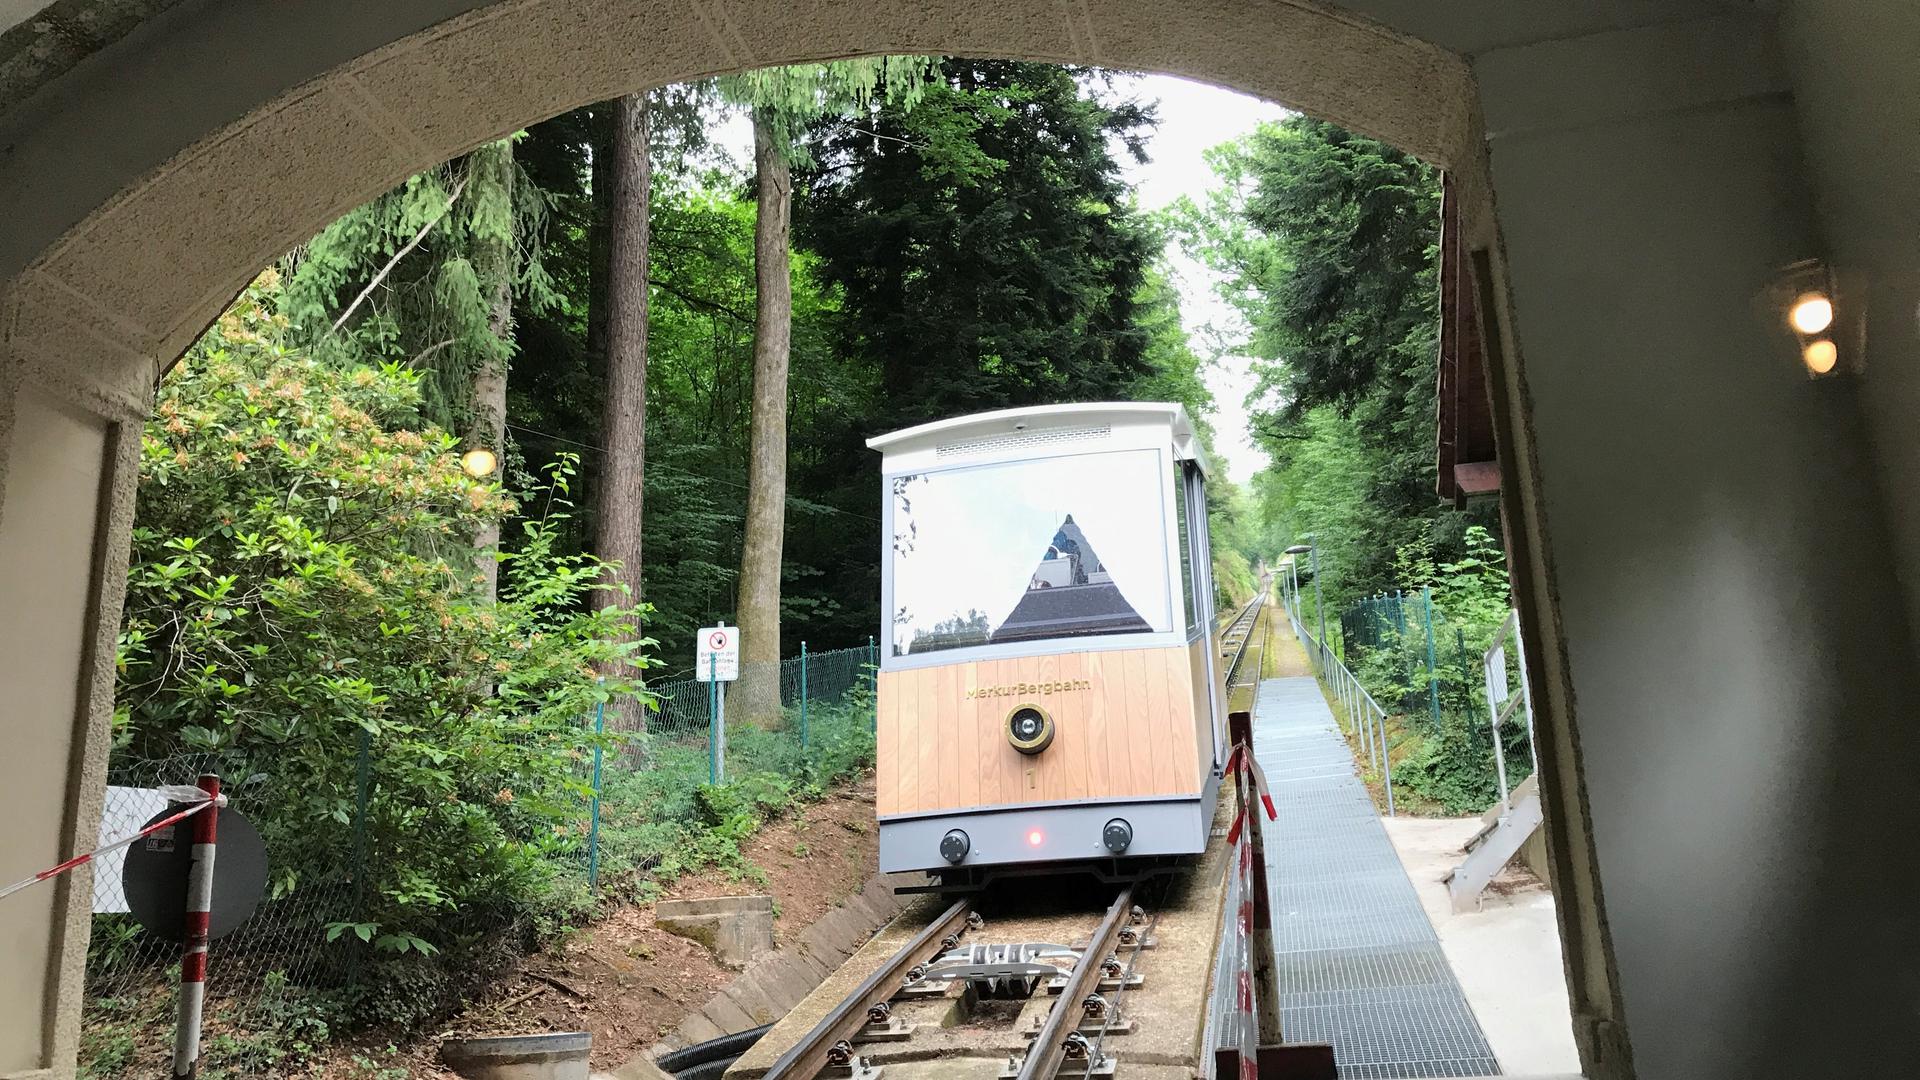 Ein Wagen der Merkurbergbahn fährt in die Talstation.